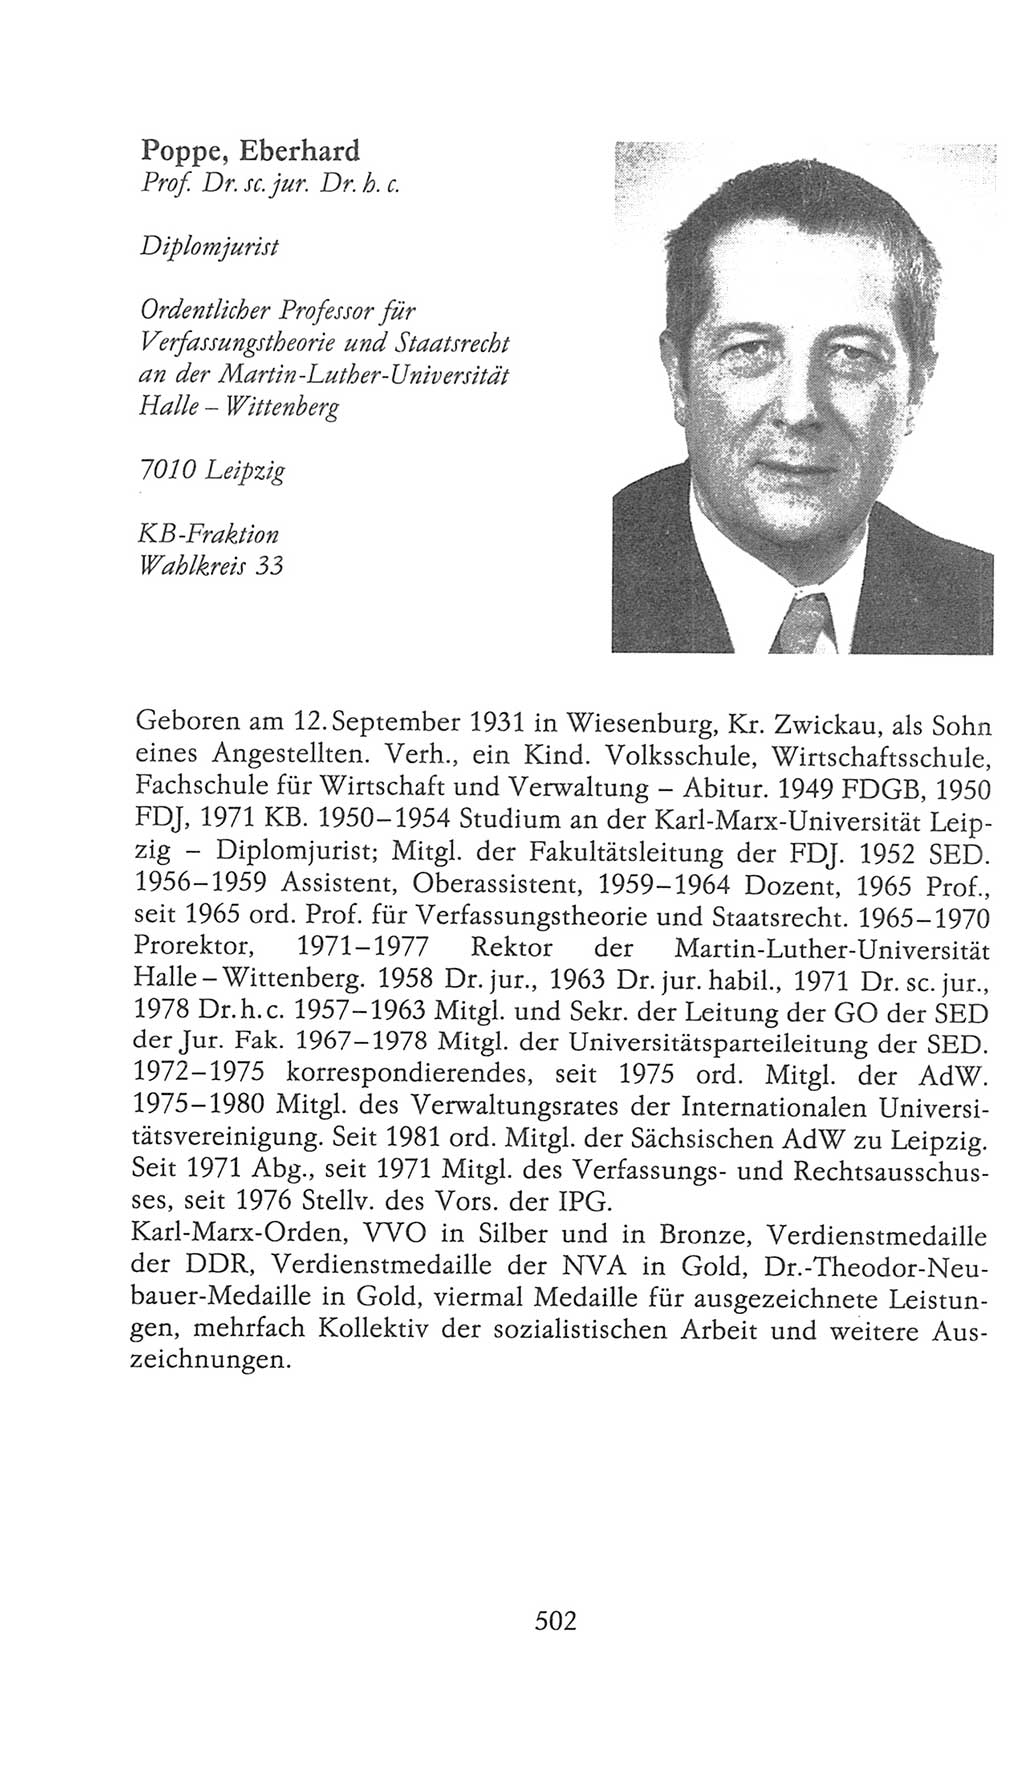 Volkskammer (VK) der Deutschen Demokratischen Republik (DDR), 9. Wahlperiode 1986-1990, Seite 502 (VK. DDR 9. WP. 1986-1990, S. 502)